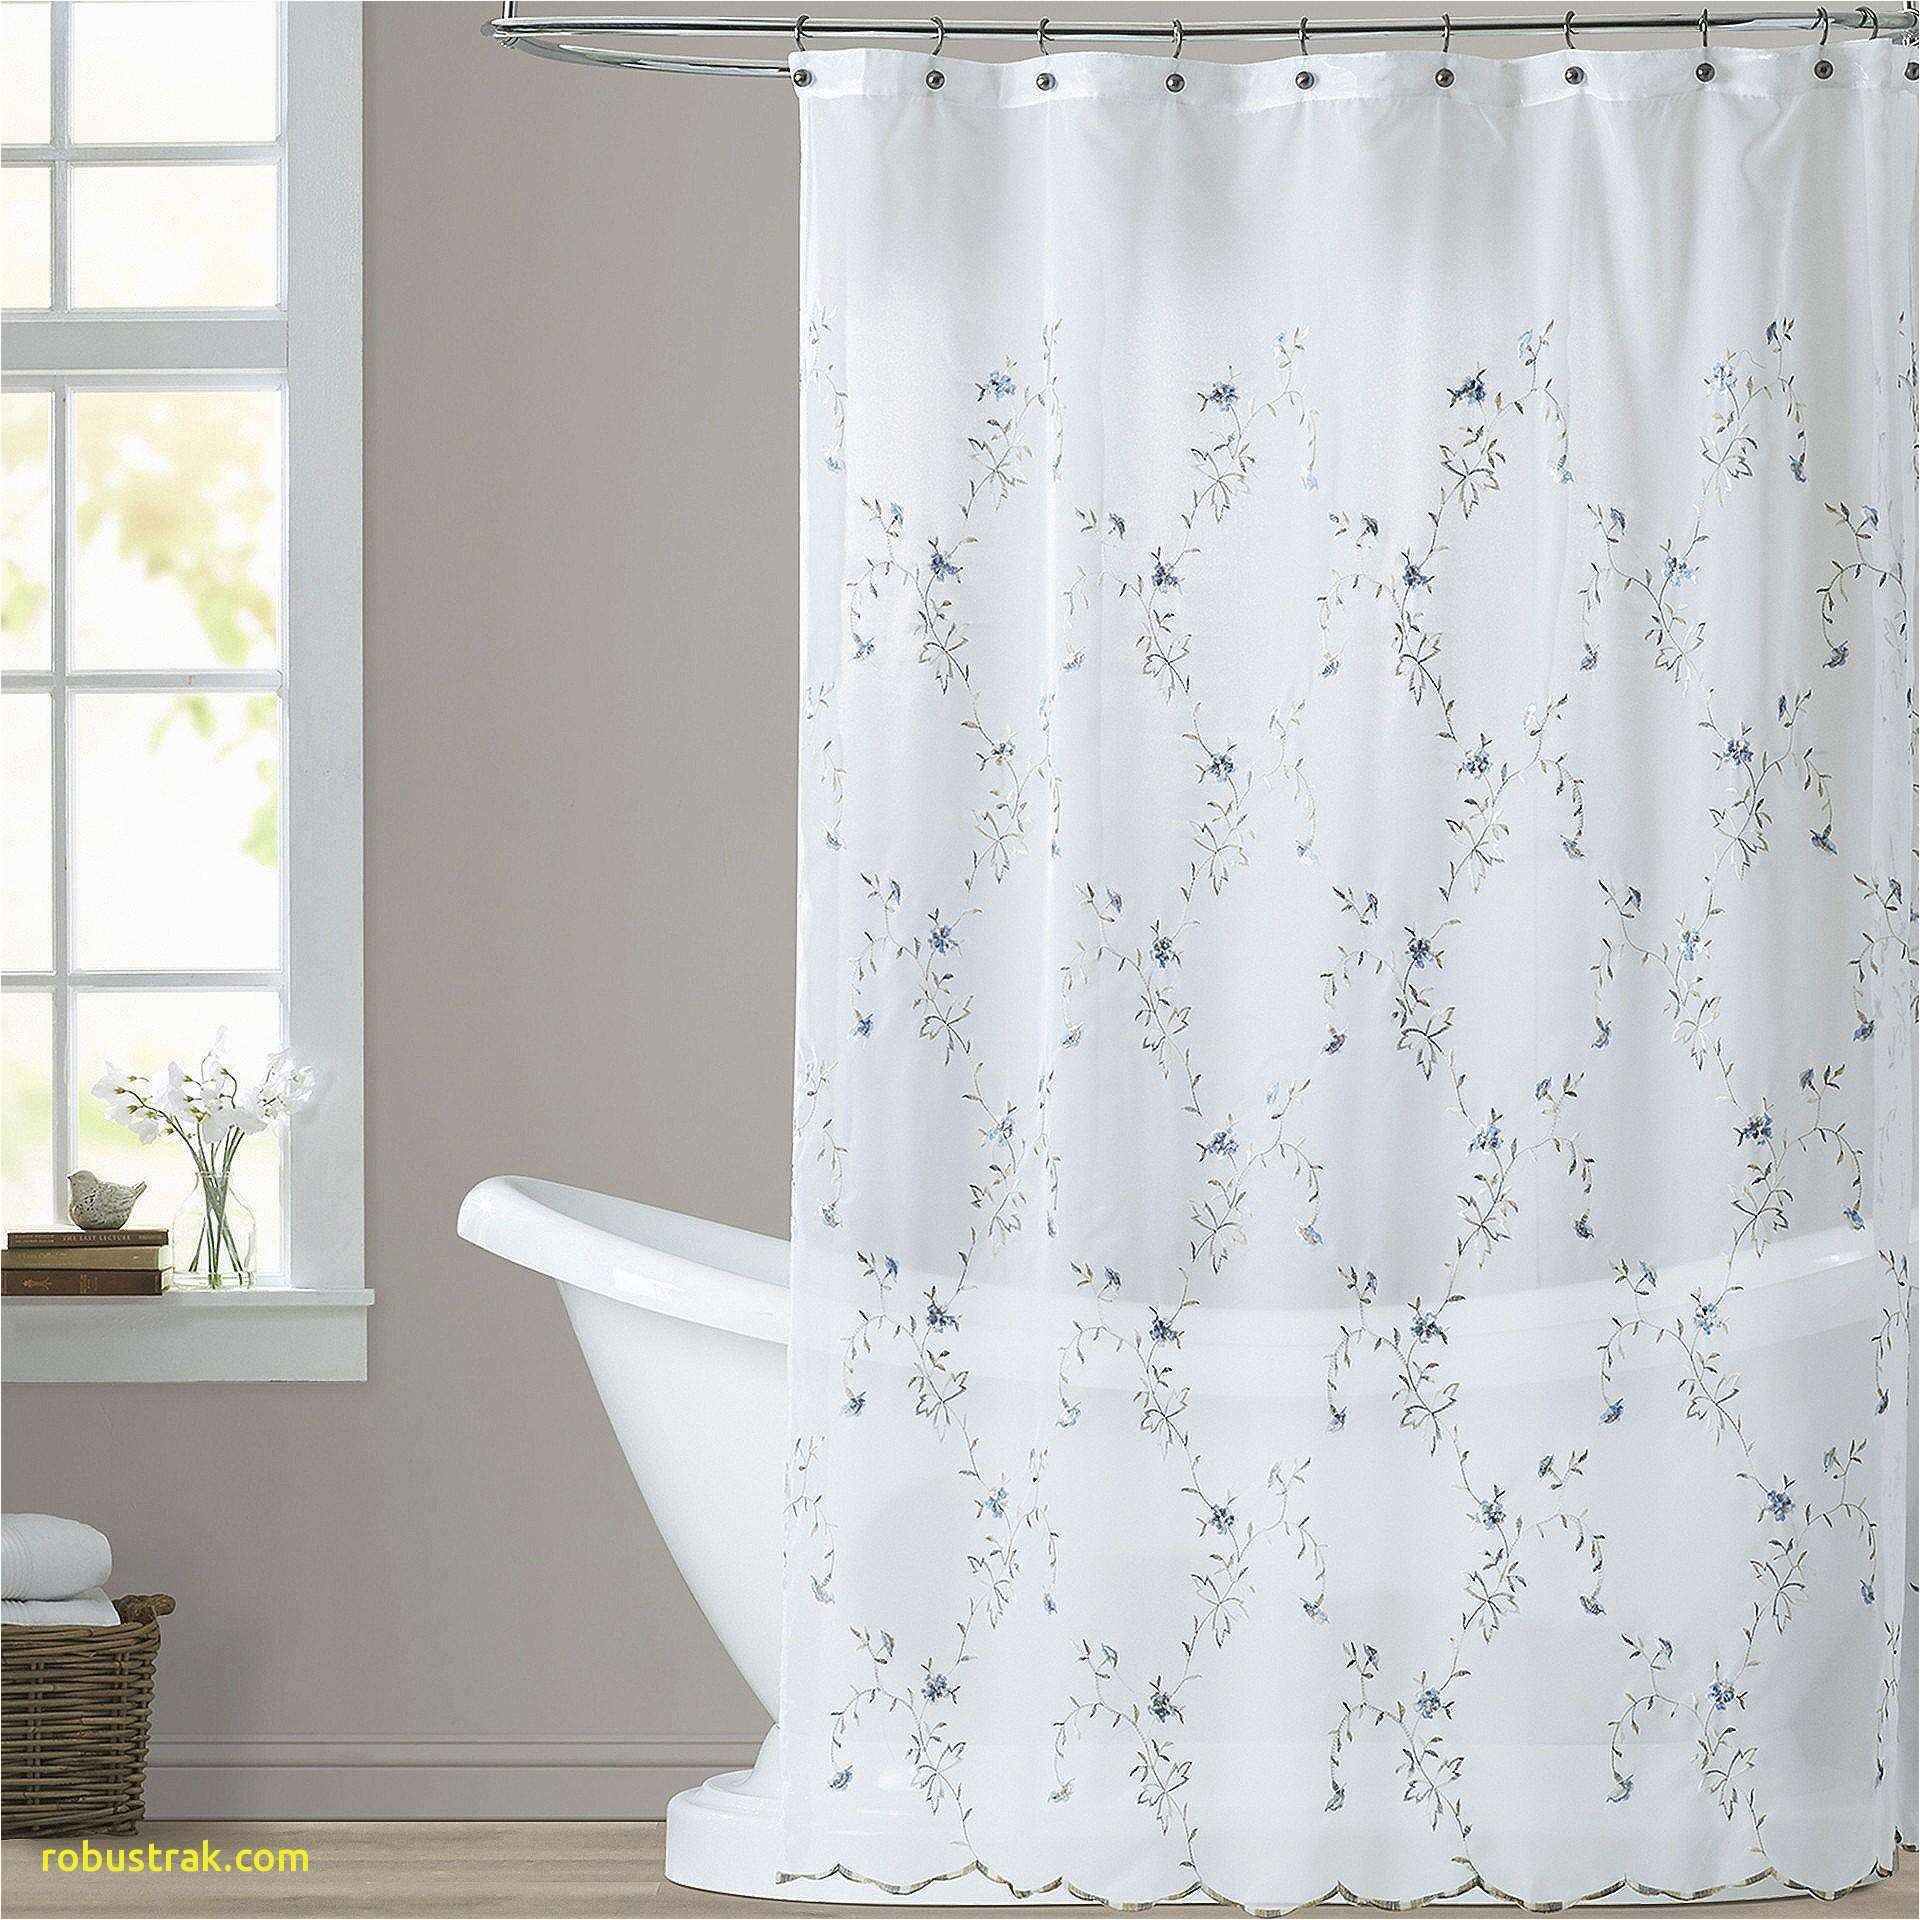 dillards shower curtains elegant unique unique shower curtains